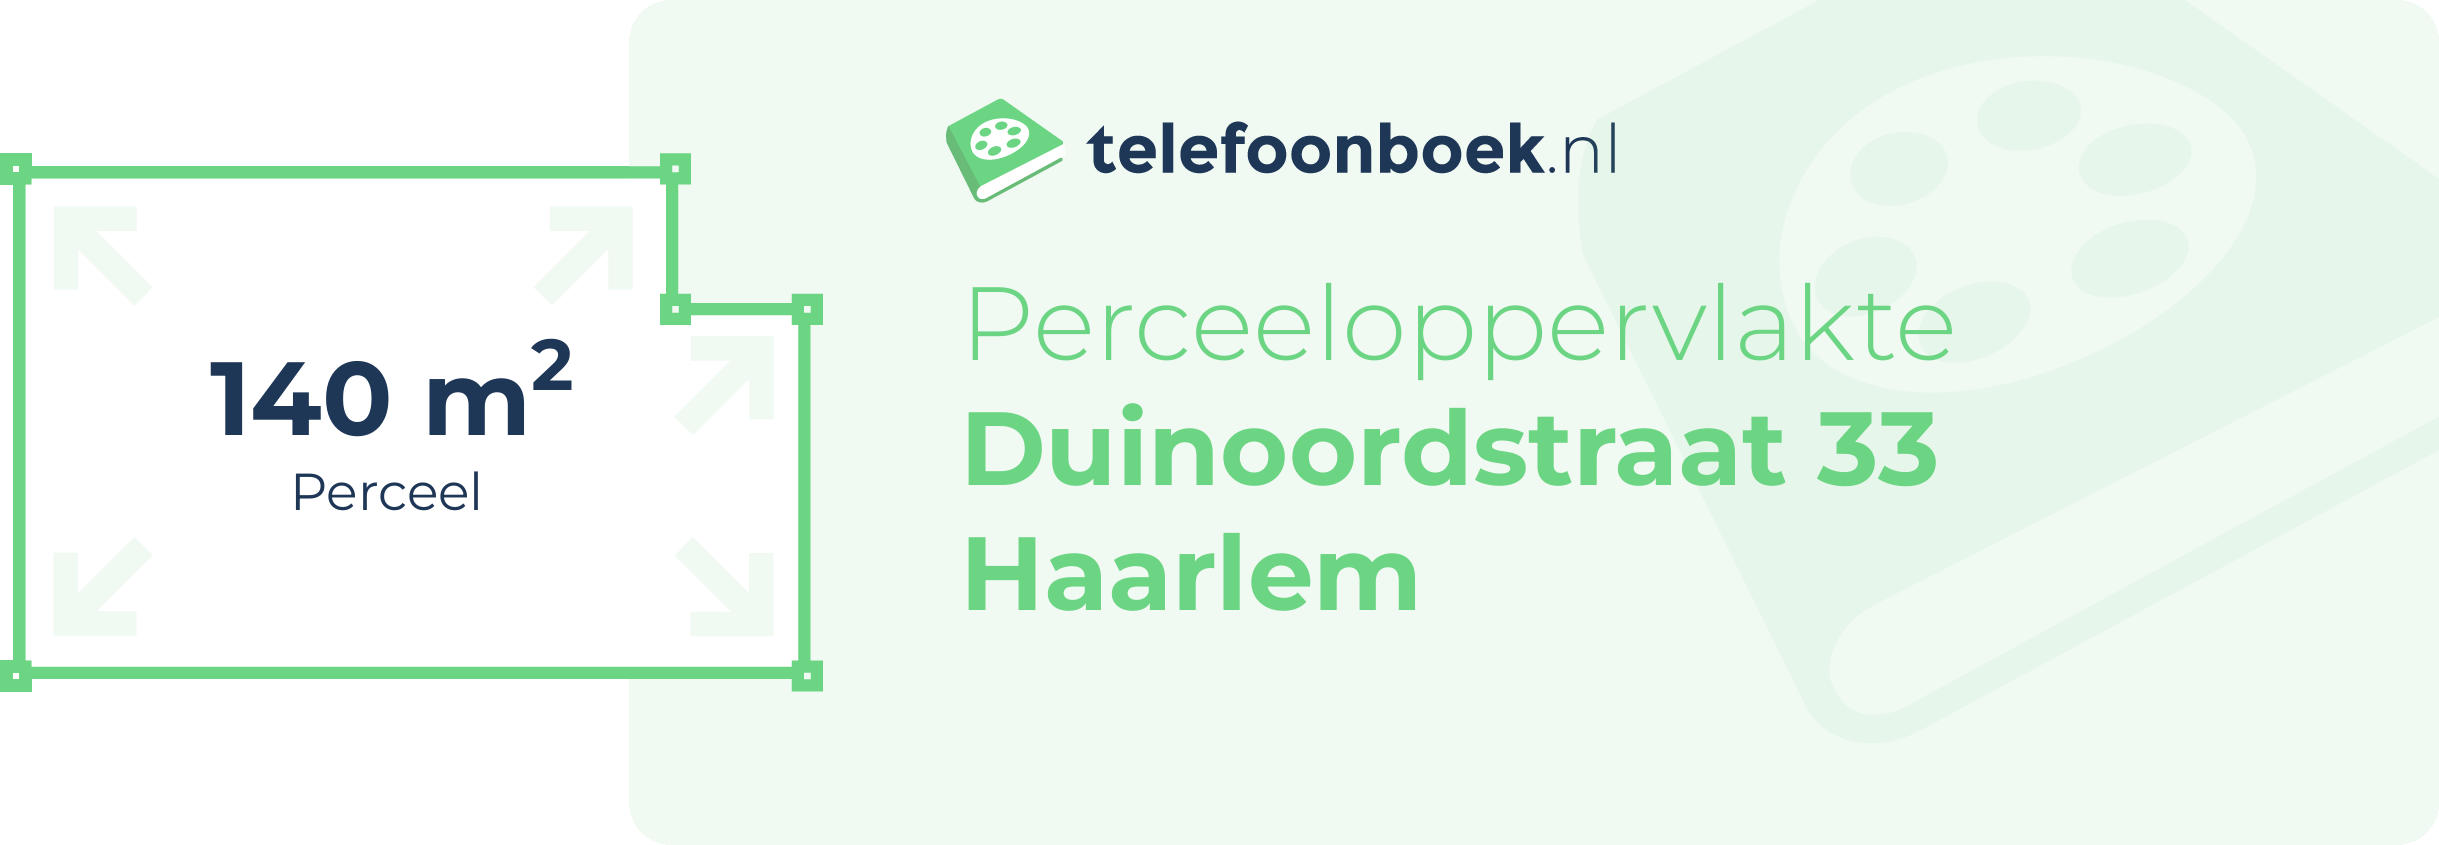 Perceeloppervlakte Duinoordstraat 33 Haarlem